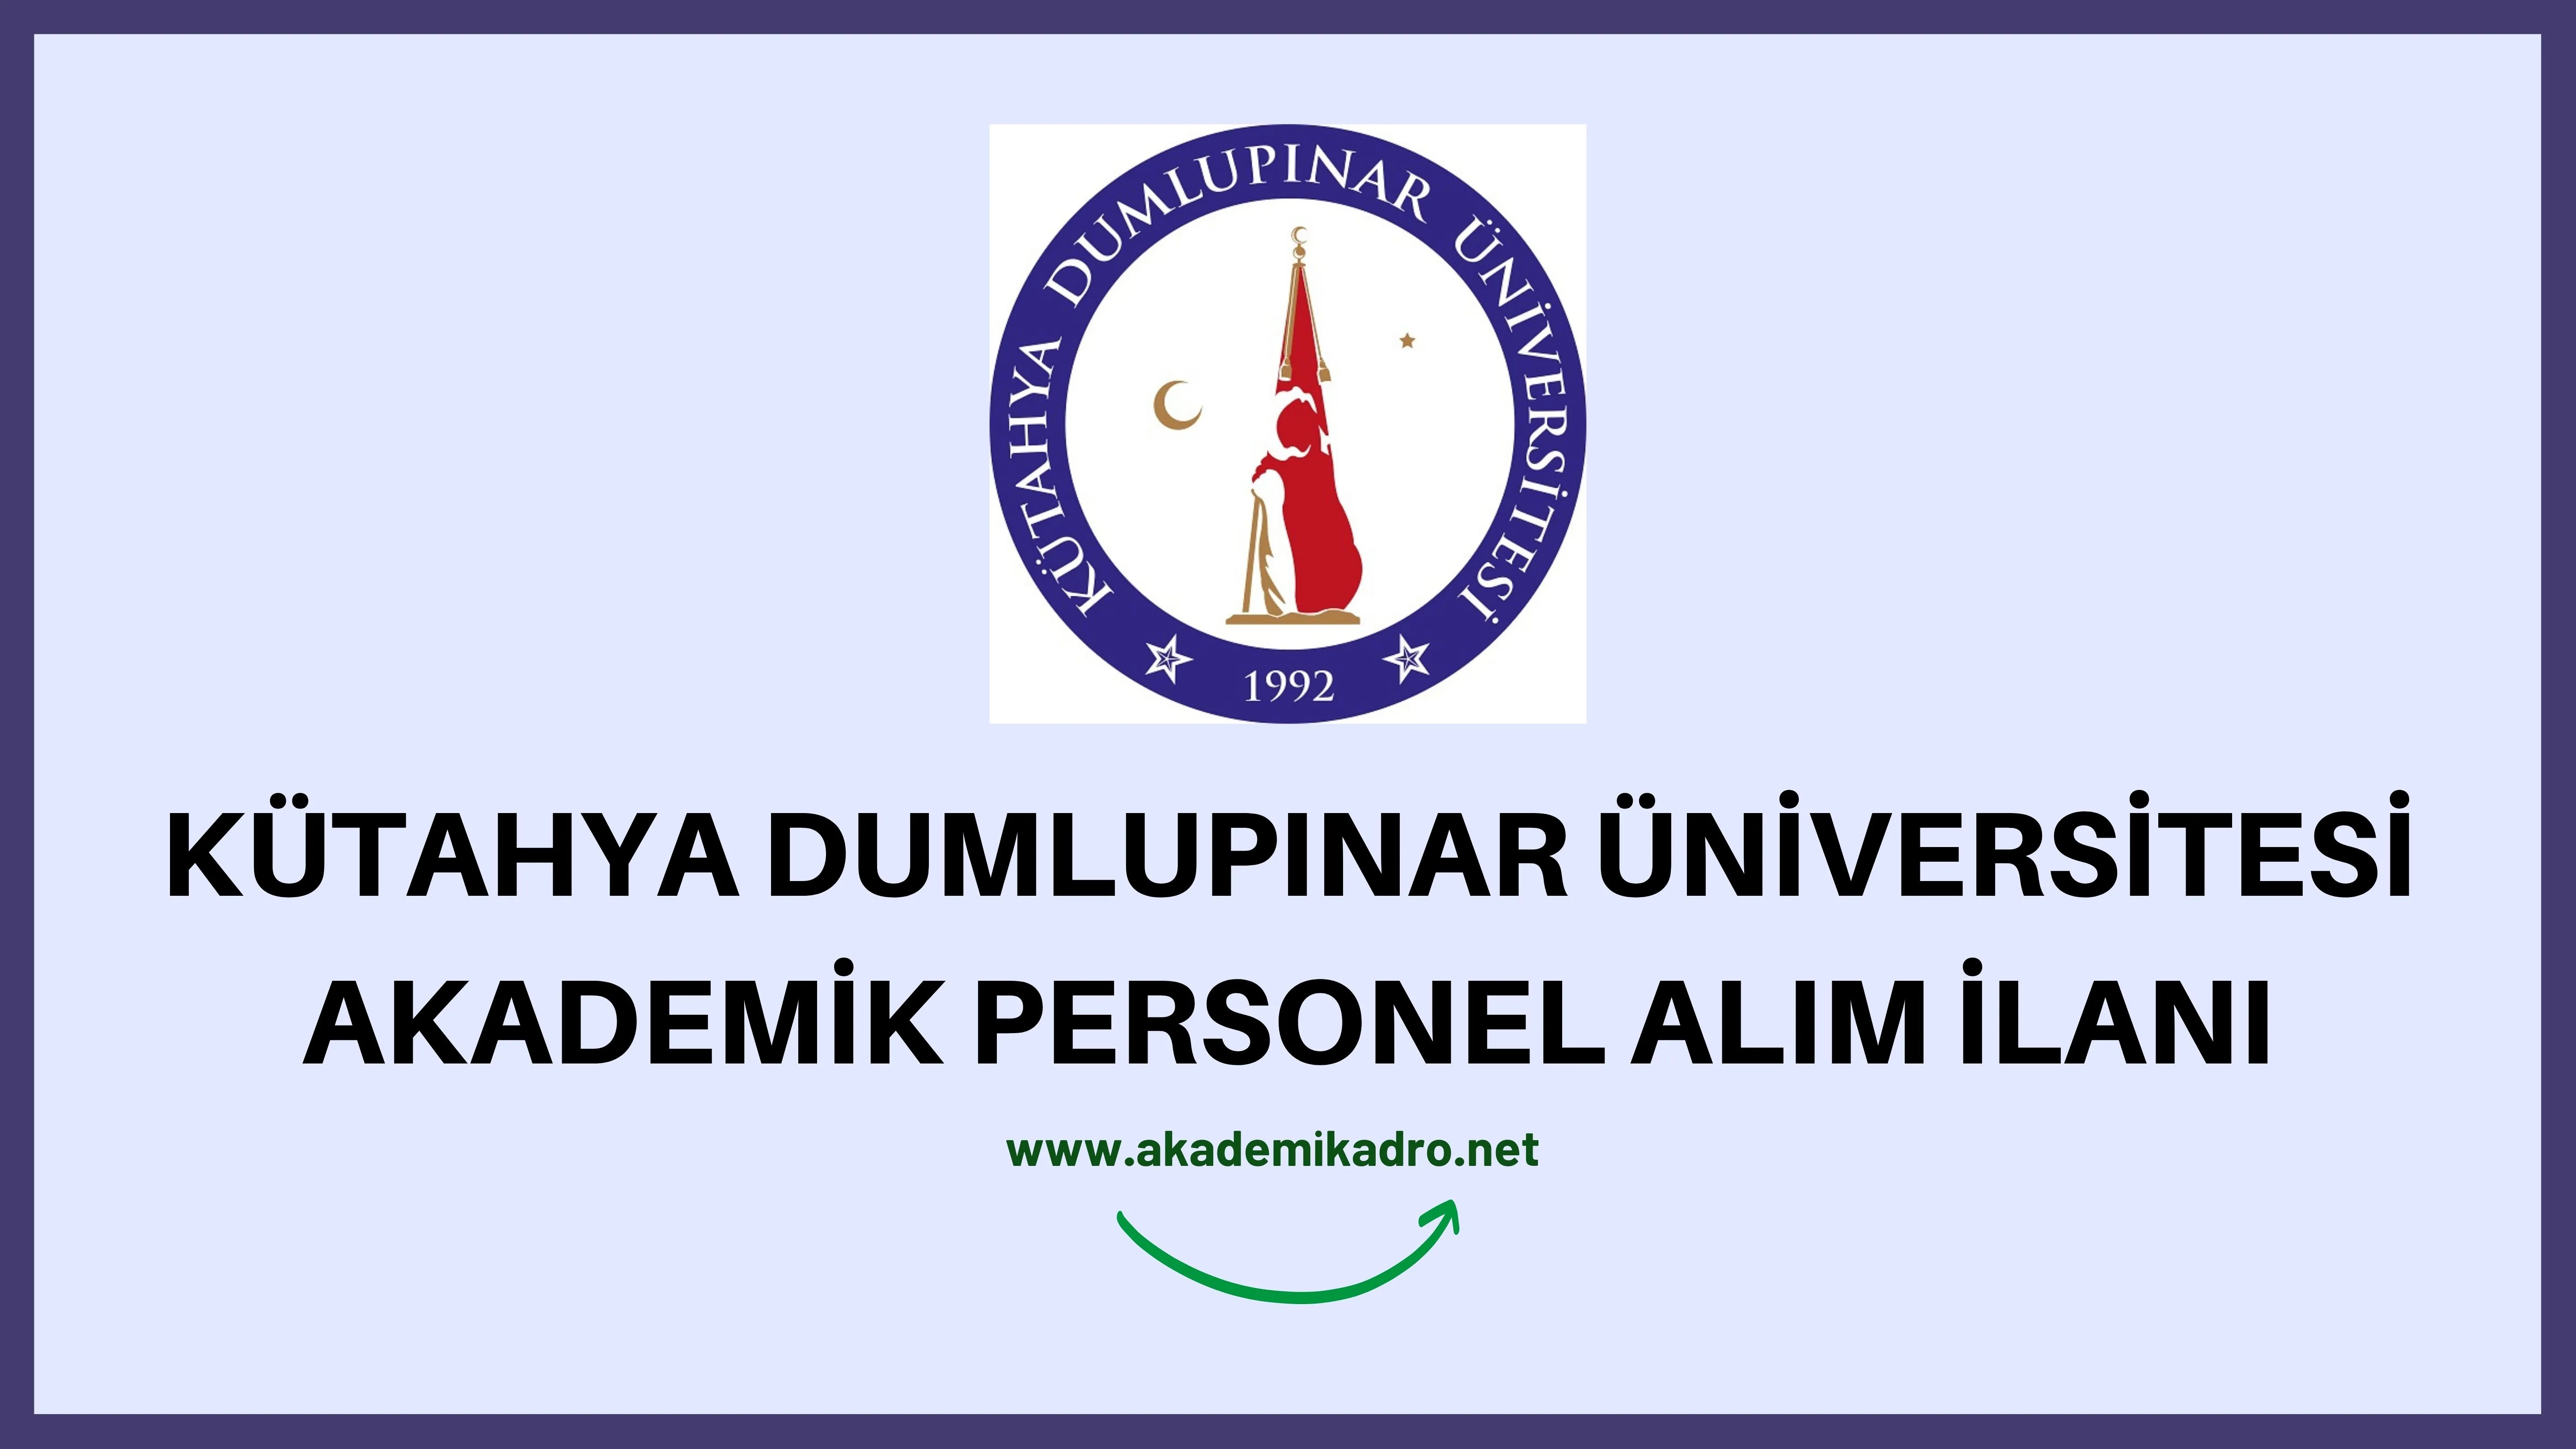 Kütahya Dumlupınar Üniversitesi birçok alandan 30 akademik personel alacak.Son başvuru tarihi 23 Eylül 2022.